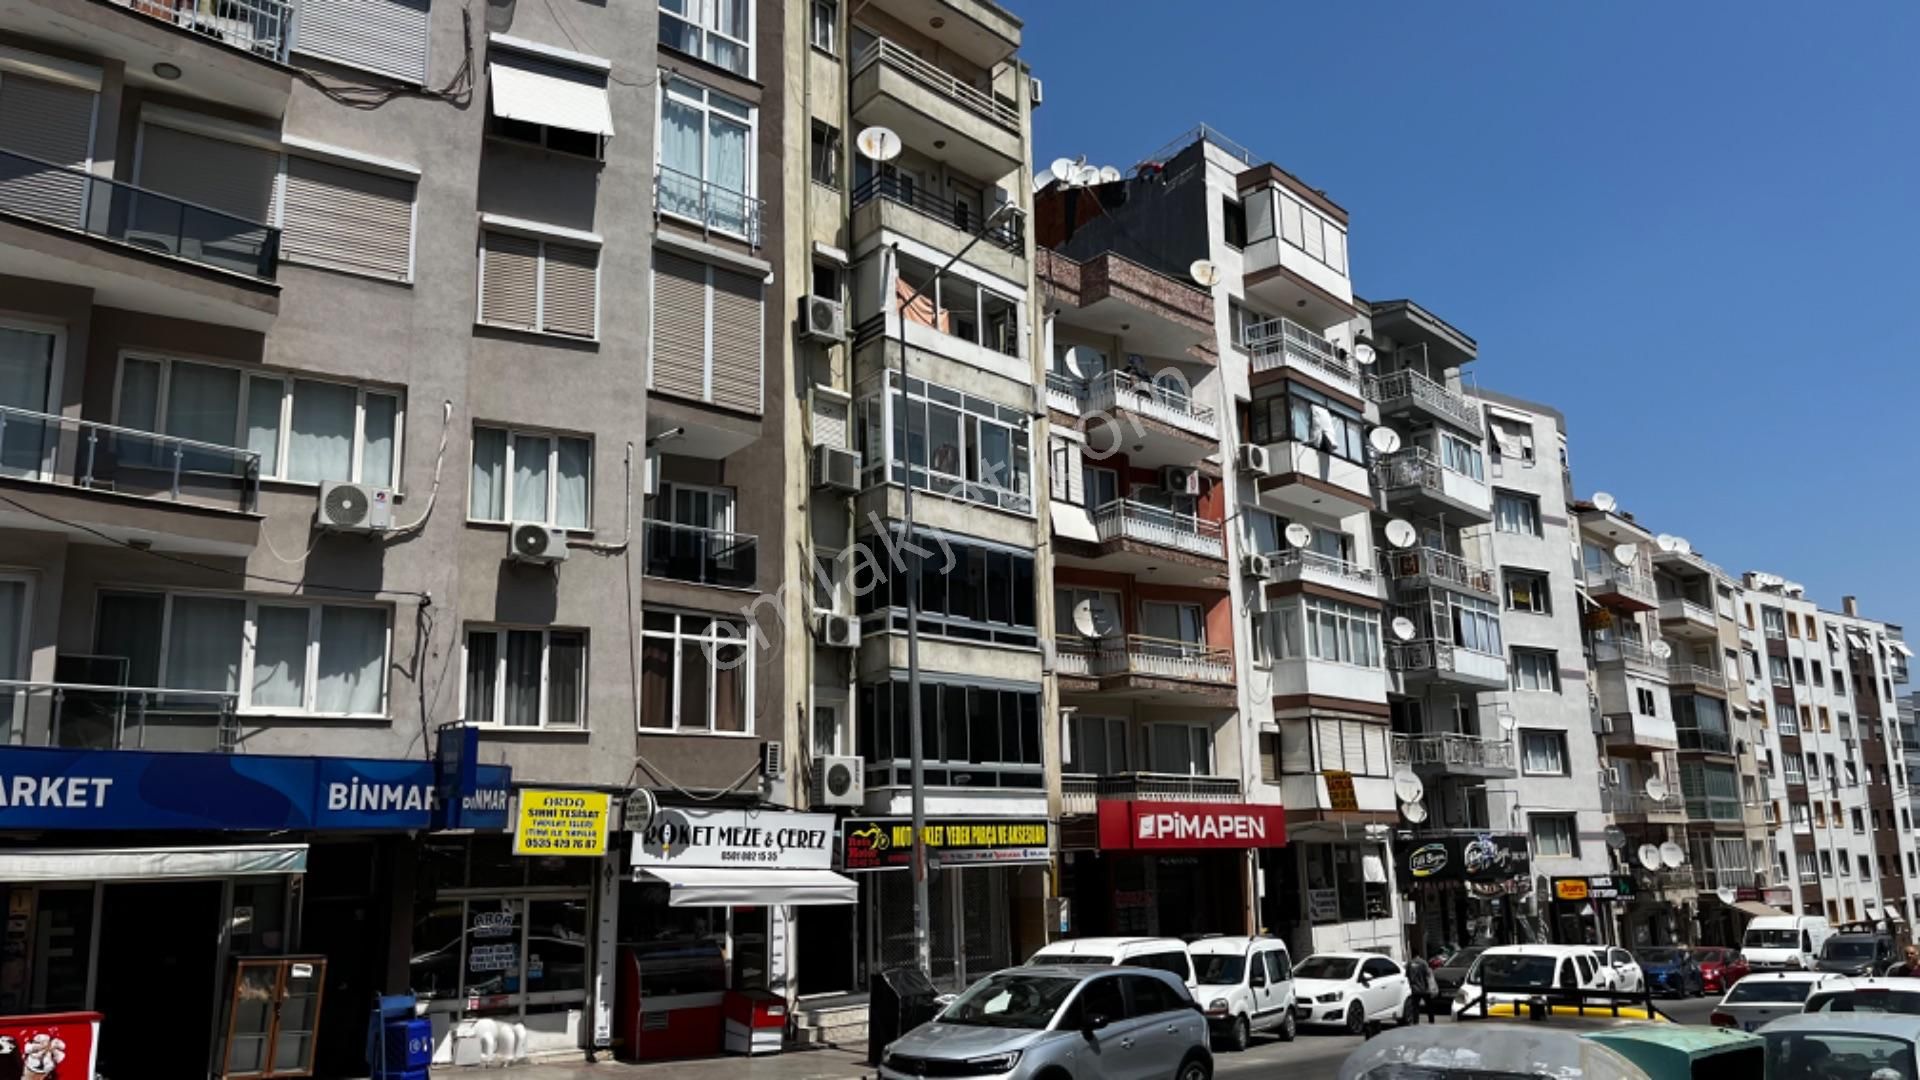 Karabağlar Doğanay Satılık Daire İzmir Yeşilyurt Cadde Üstü Satılık 2+1 Daire